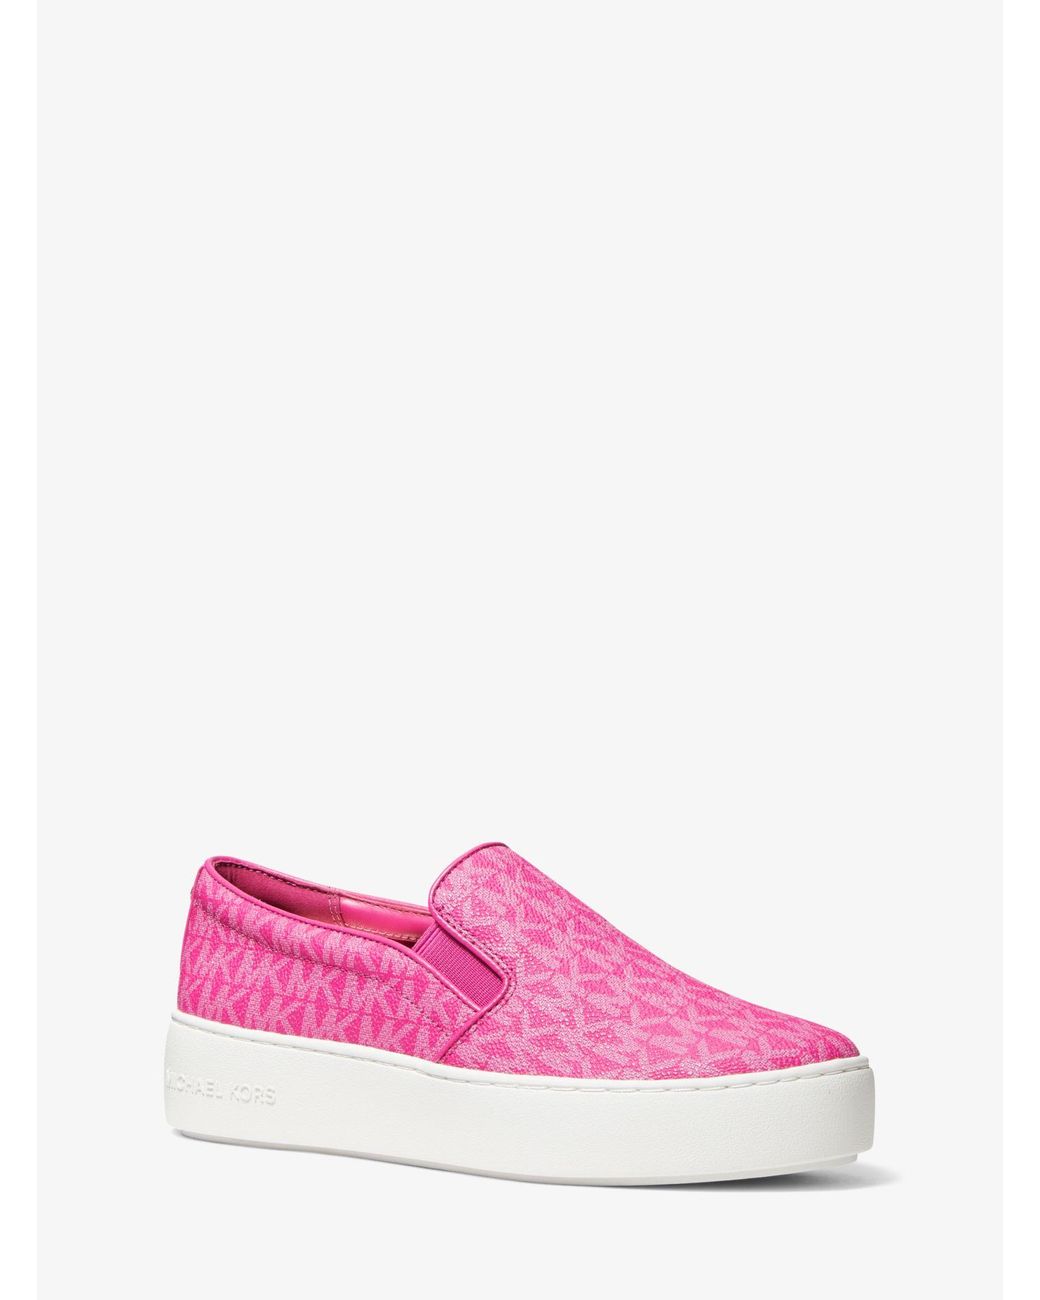 Michael Kors Trent Logo Slip-on Sneaker in Pink | Lyst